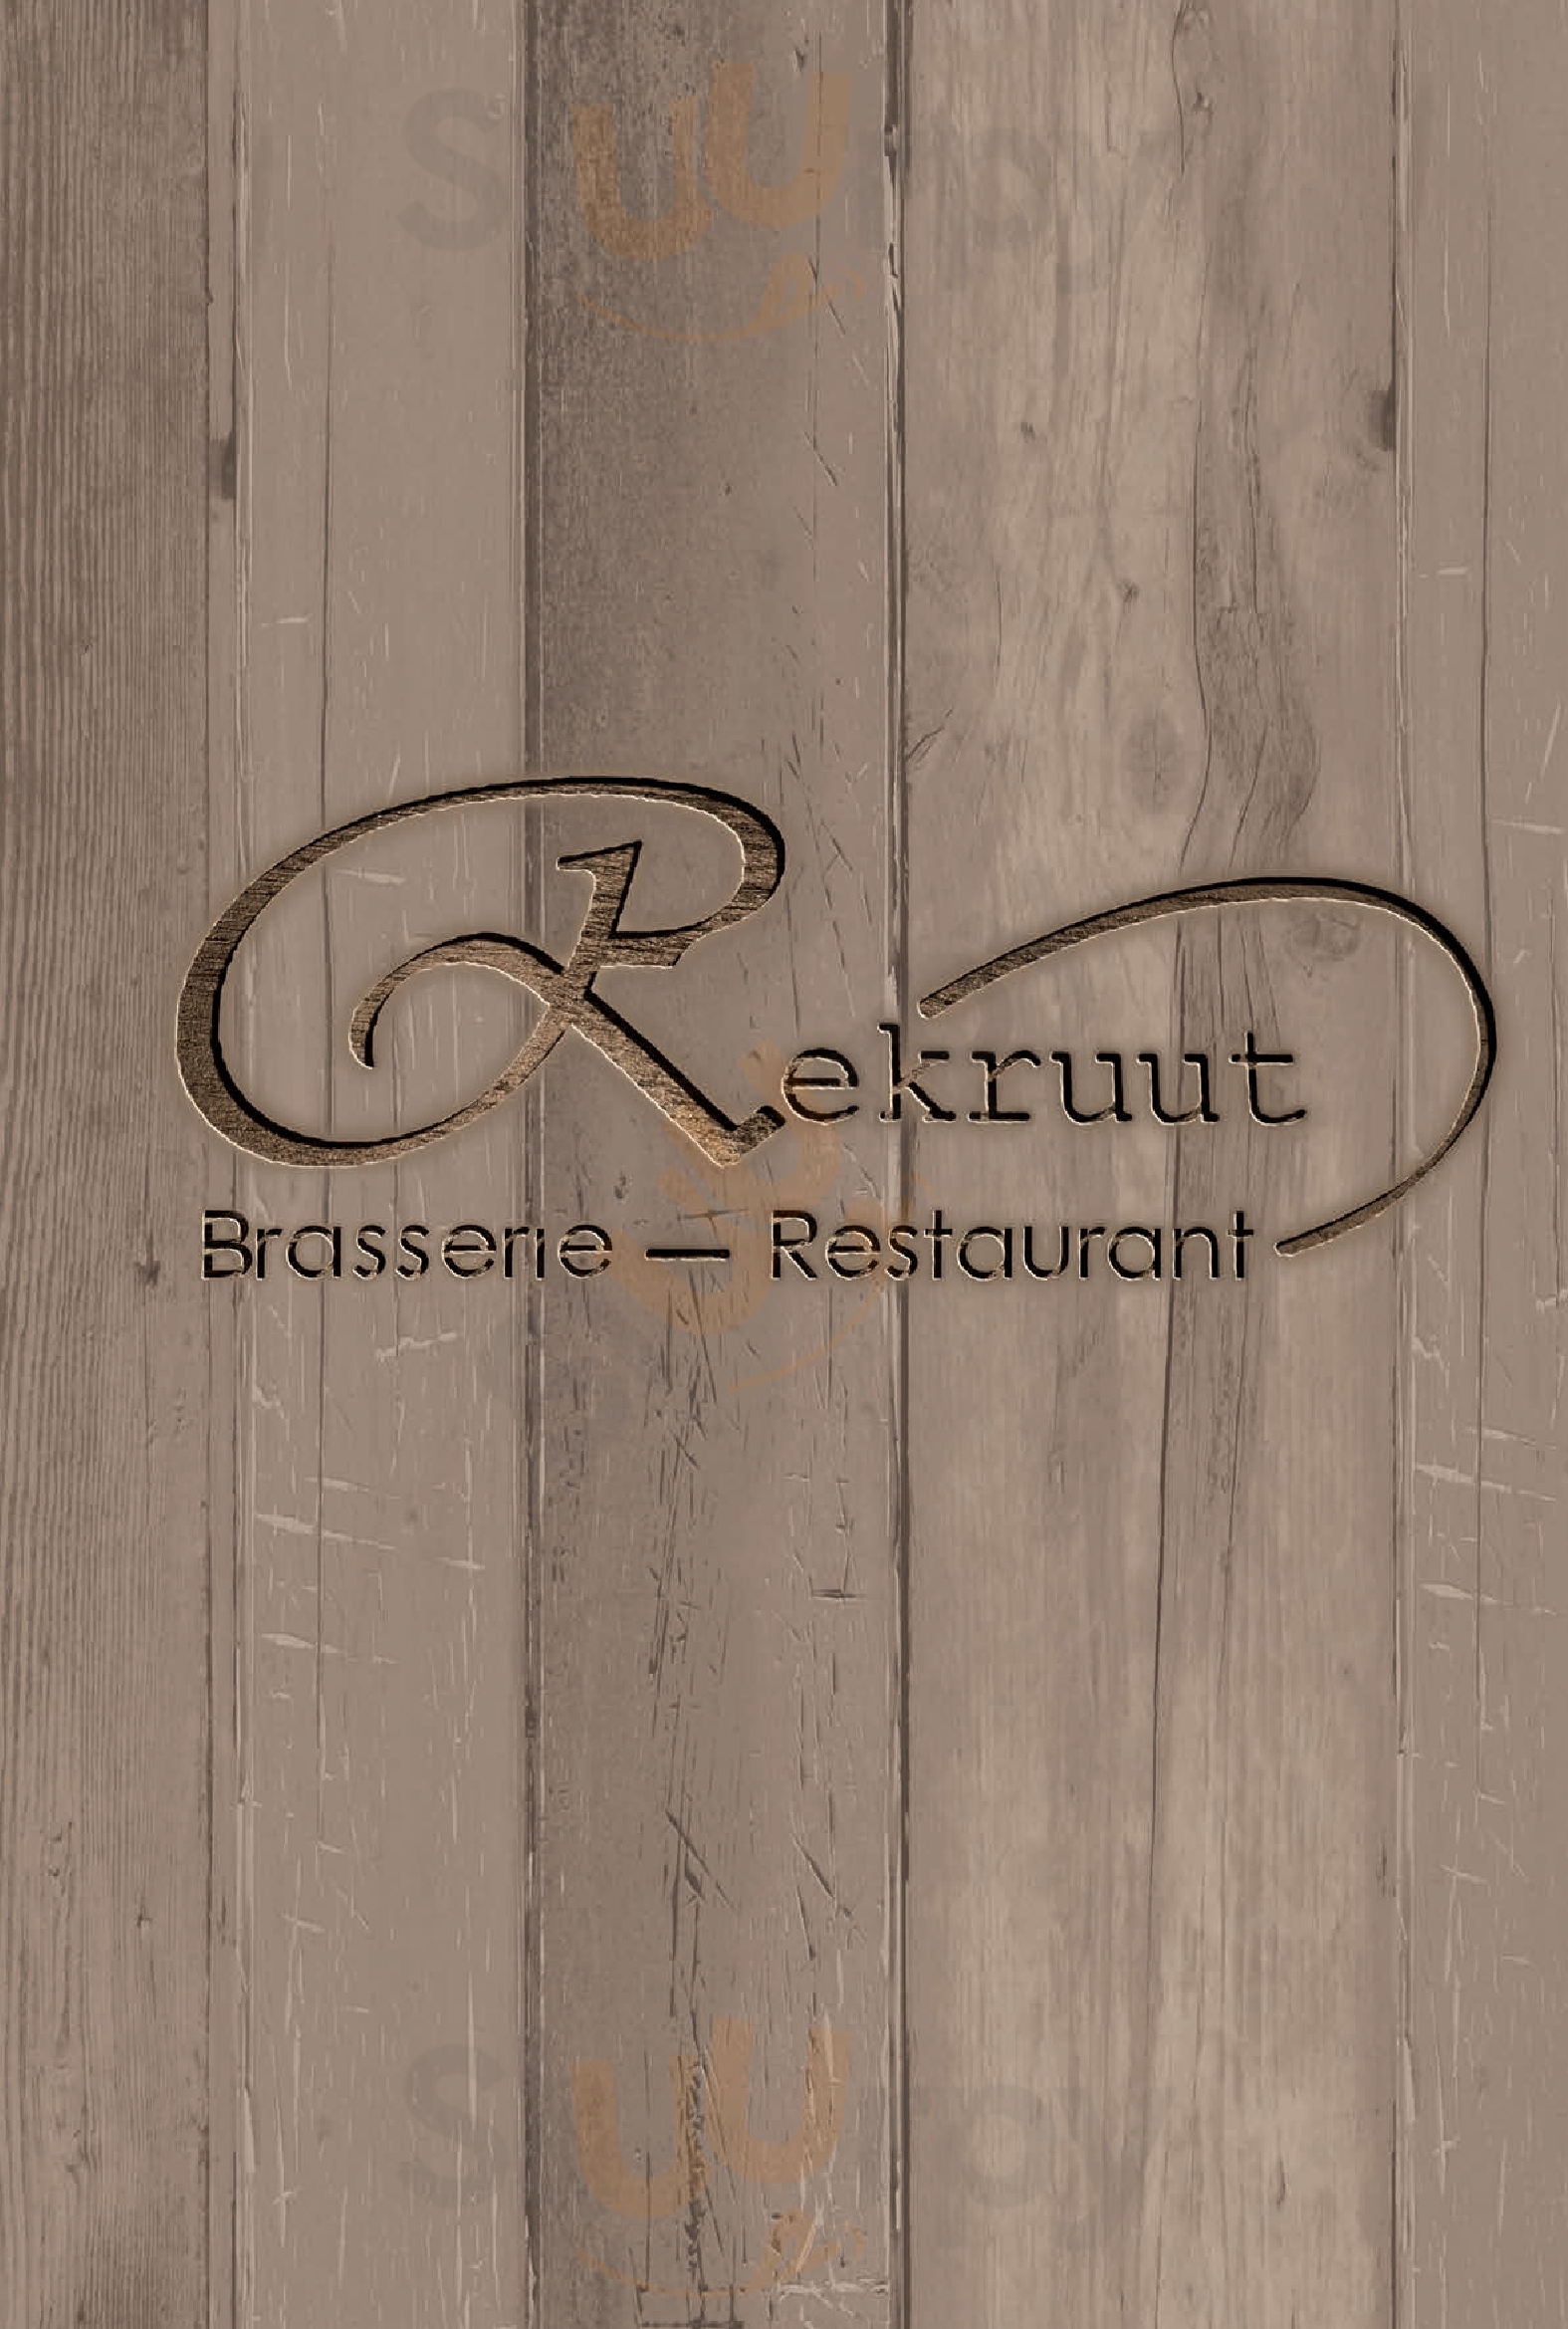 Brasserie Rekruut Turnhout Menu - 1